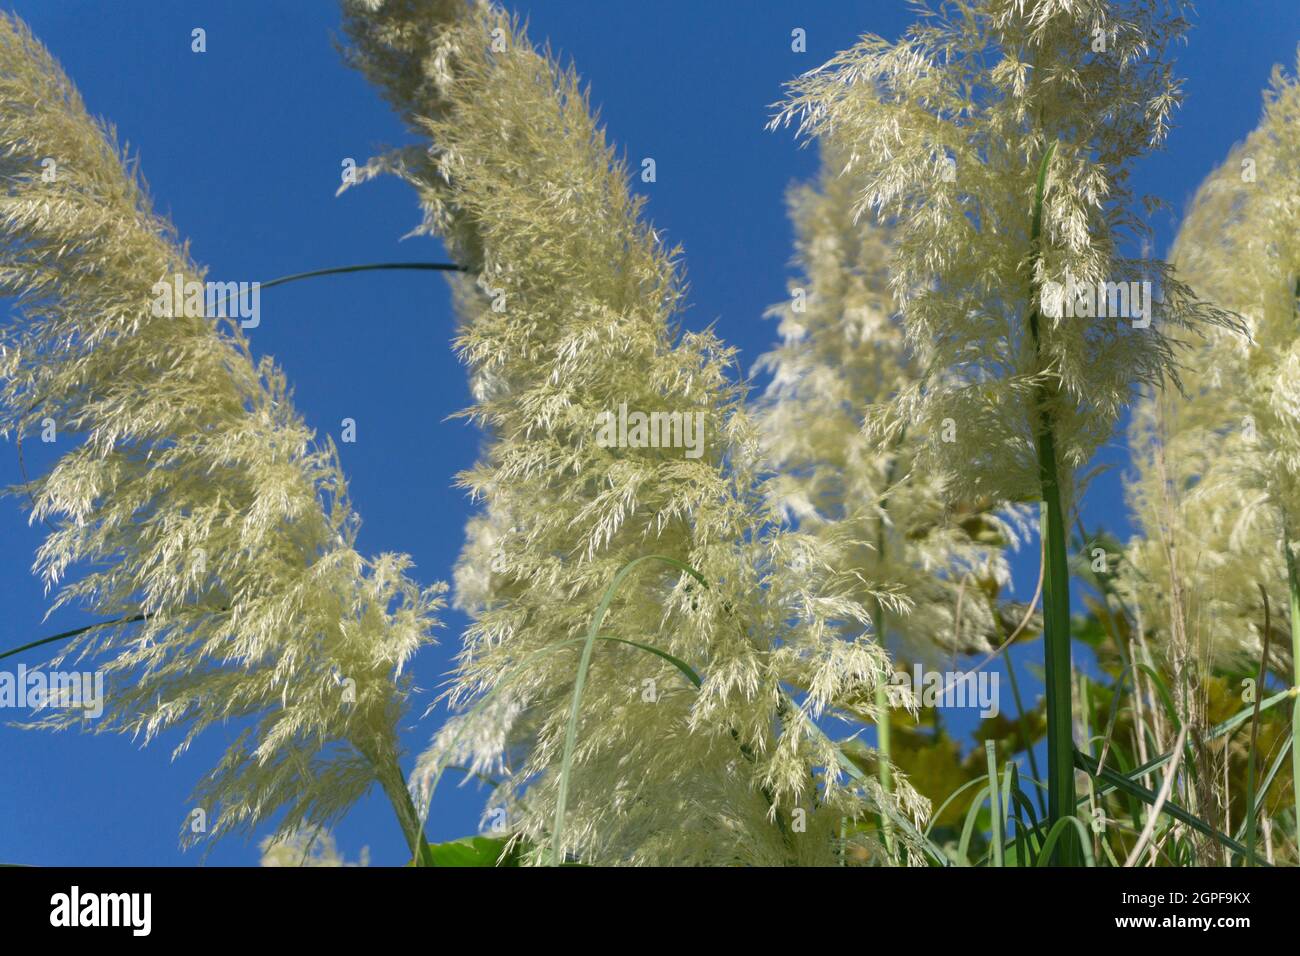 Pampas grass under a bright blue summer sky Stock Photo